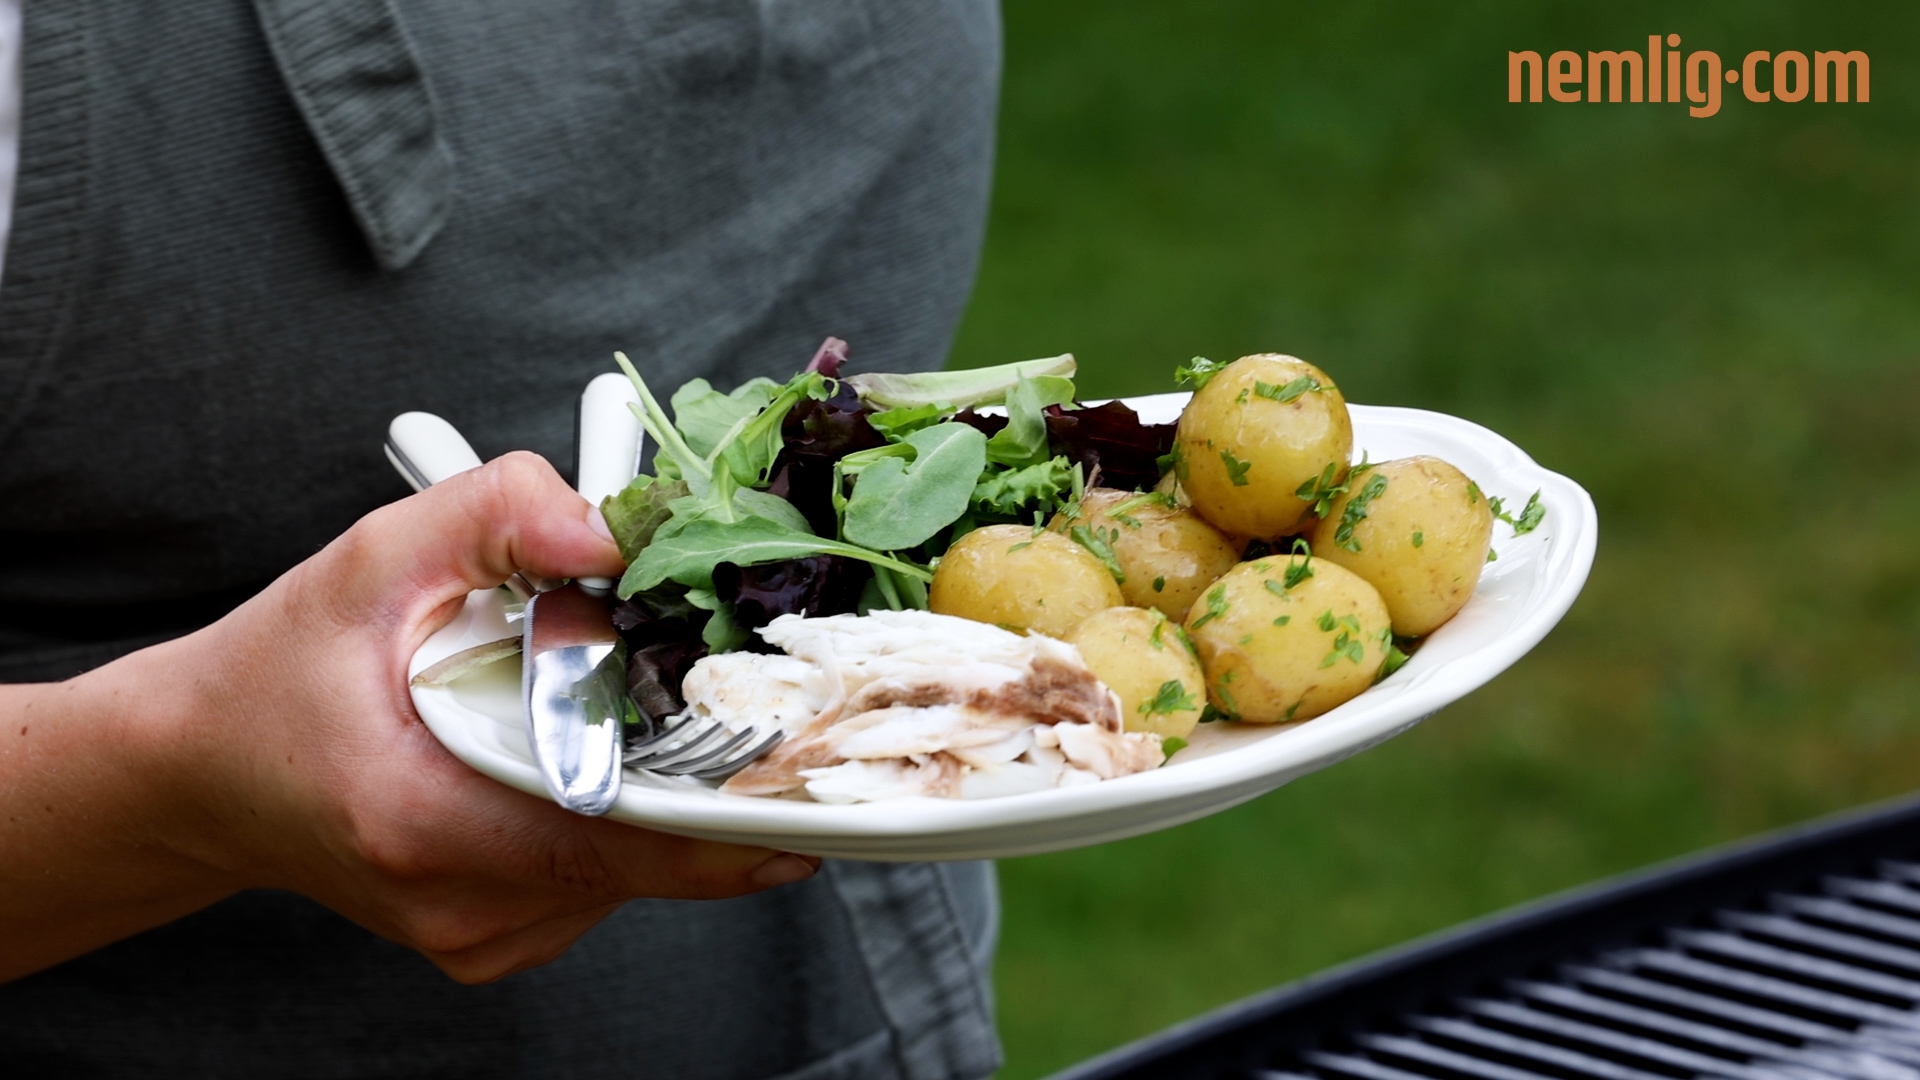 Hindre Hr Standard Grillet havbars med nye kartofler og grillede majskolber | Se opskriften her